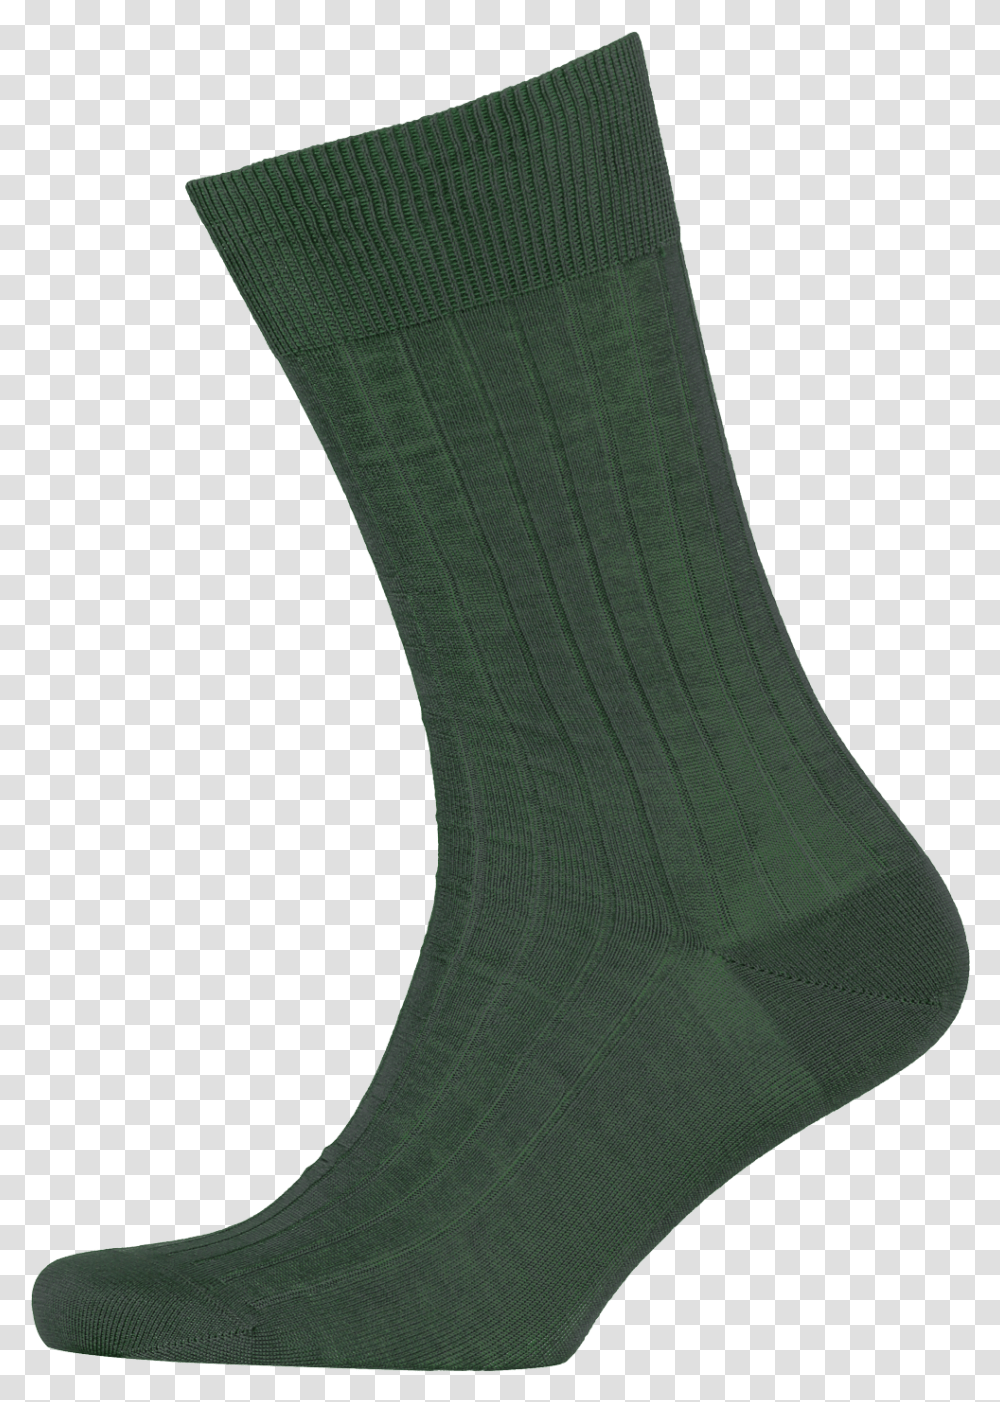 Coloured Socks Bottle Green Sock, Clothing, Apparel, Shoe, Footwear Transparent Png